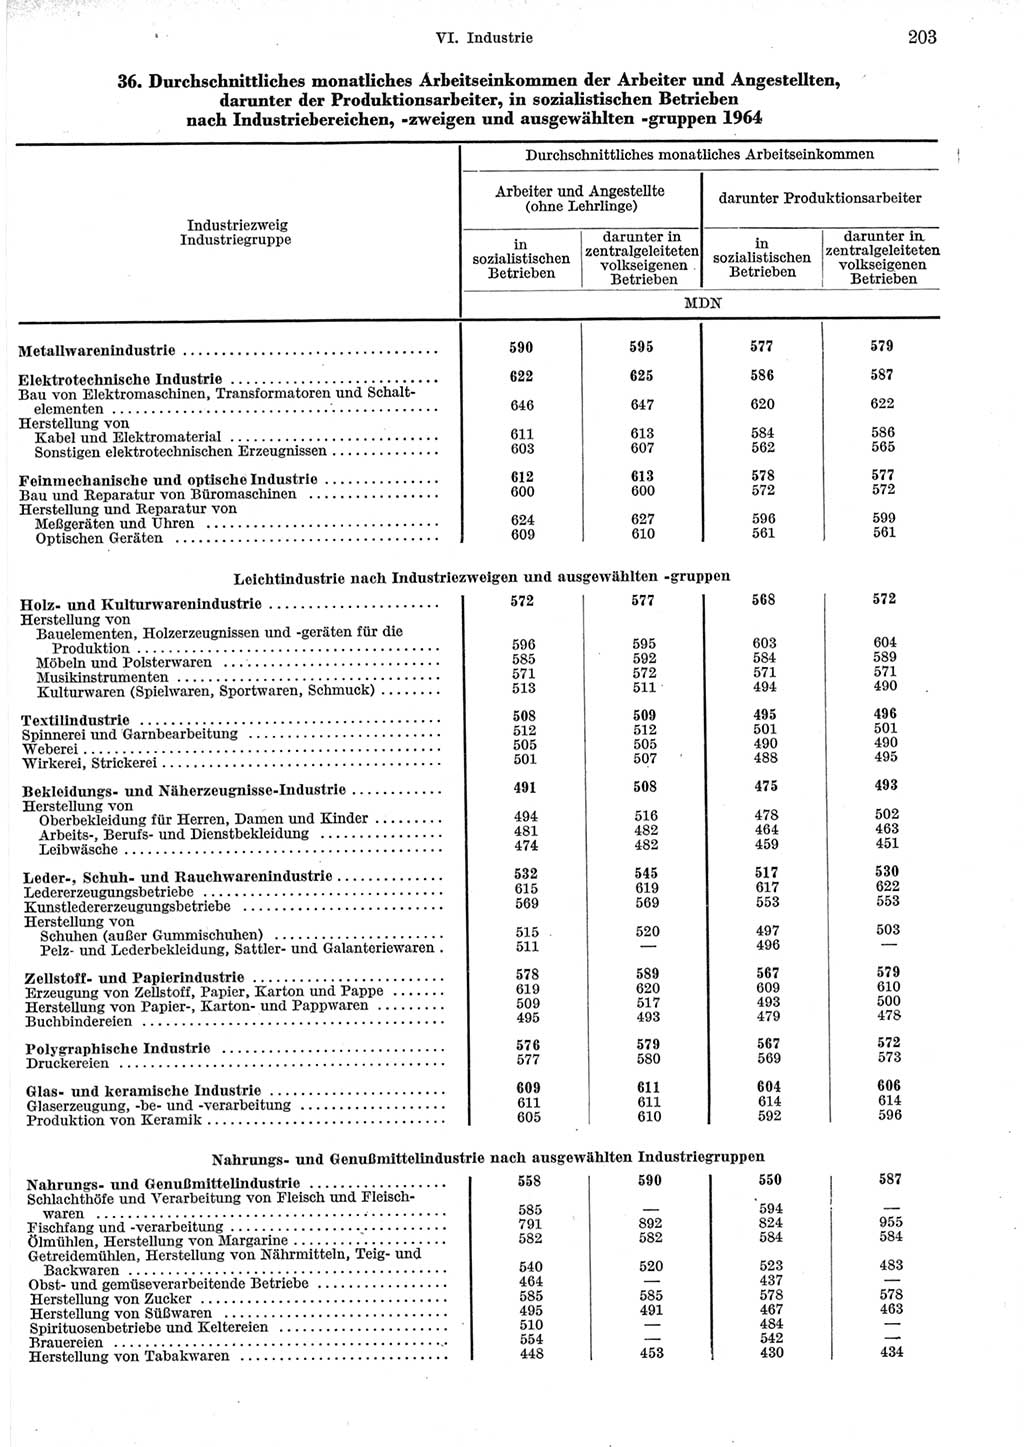 Statistisches Jahrbuch der Deutschen Demokratischen Republik (DDR) 1965, Seite 203 (Stat. Jb. DDR 1965, S. 203)